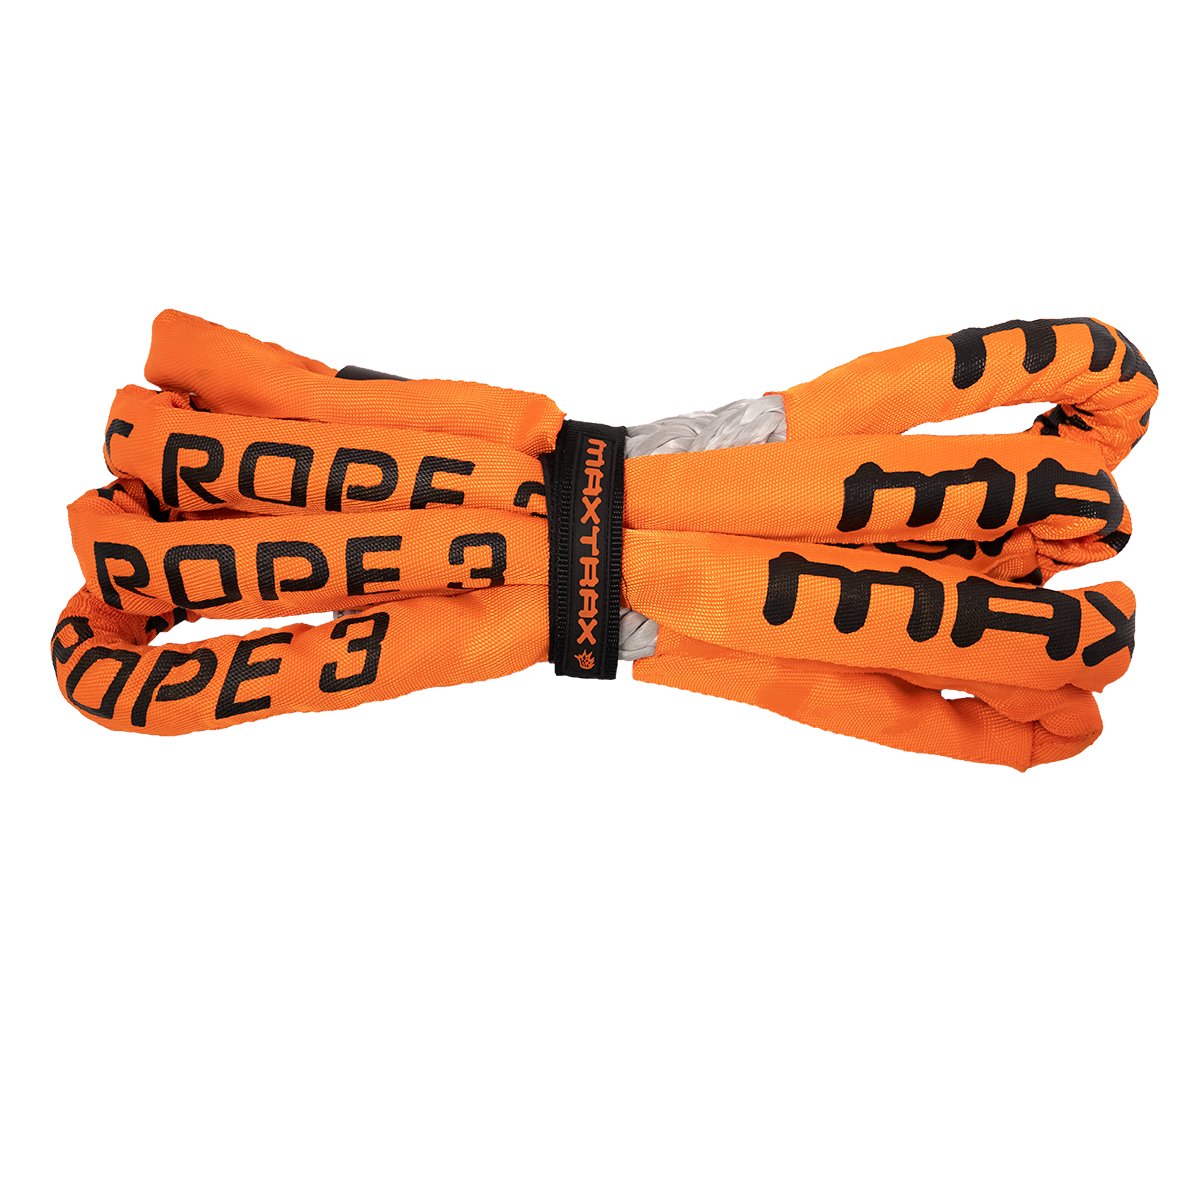 MAXTRAX Static Rope | Maxtrax | A247 Gear